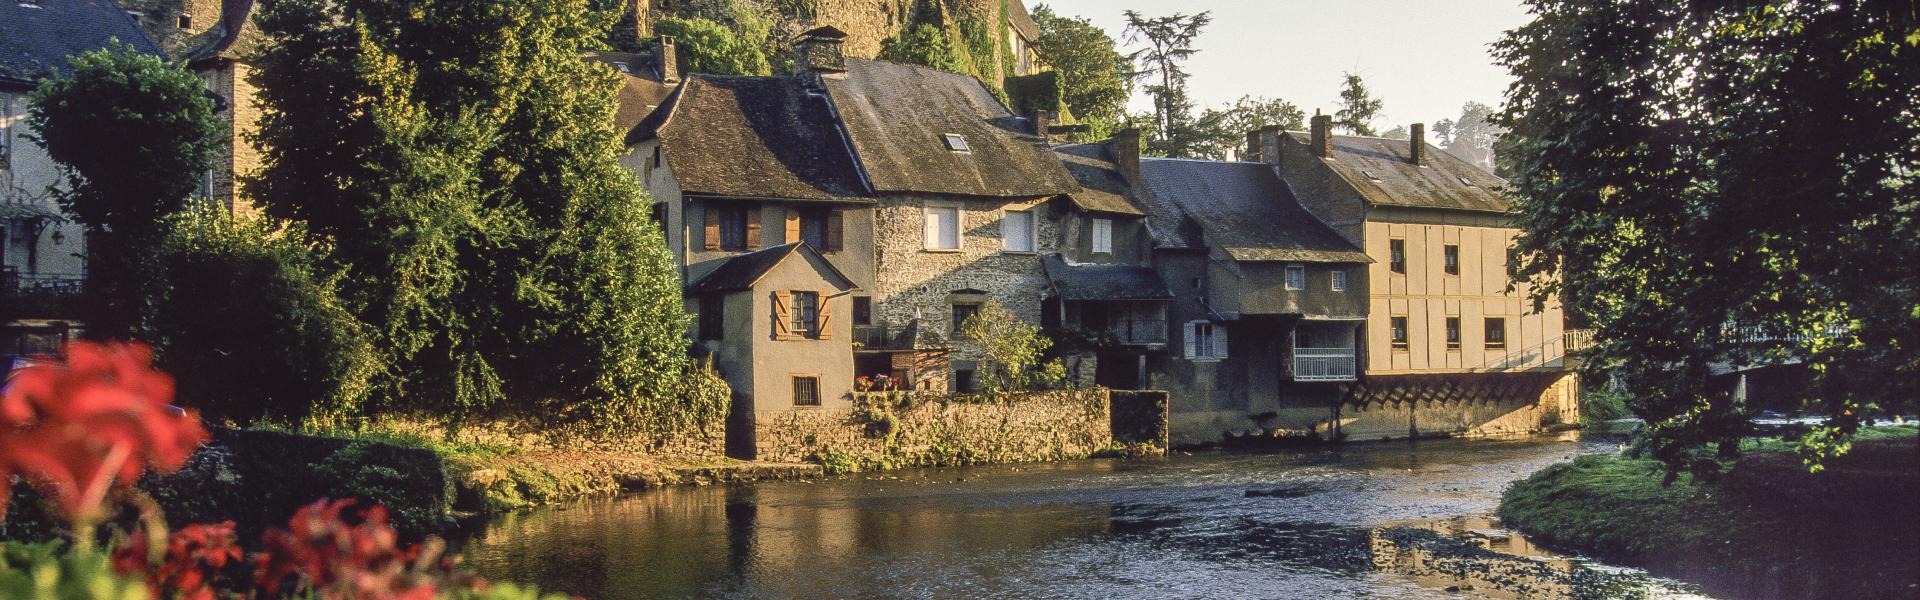 Location de vacances en Corrèze - Corrèze - amivac